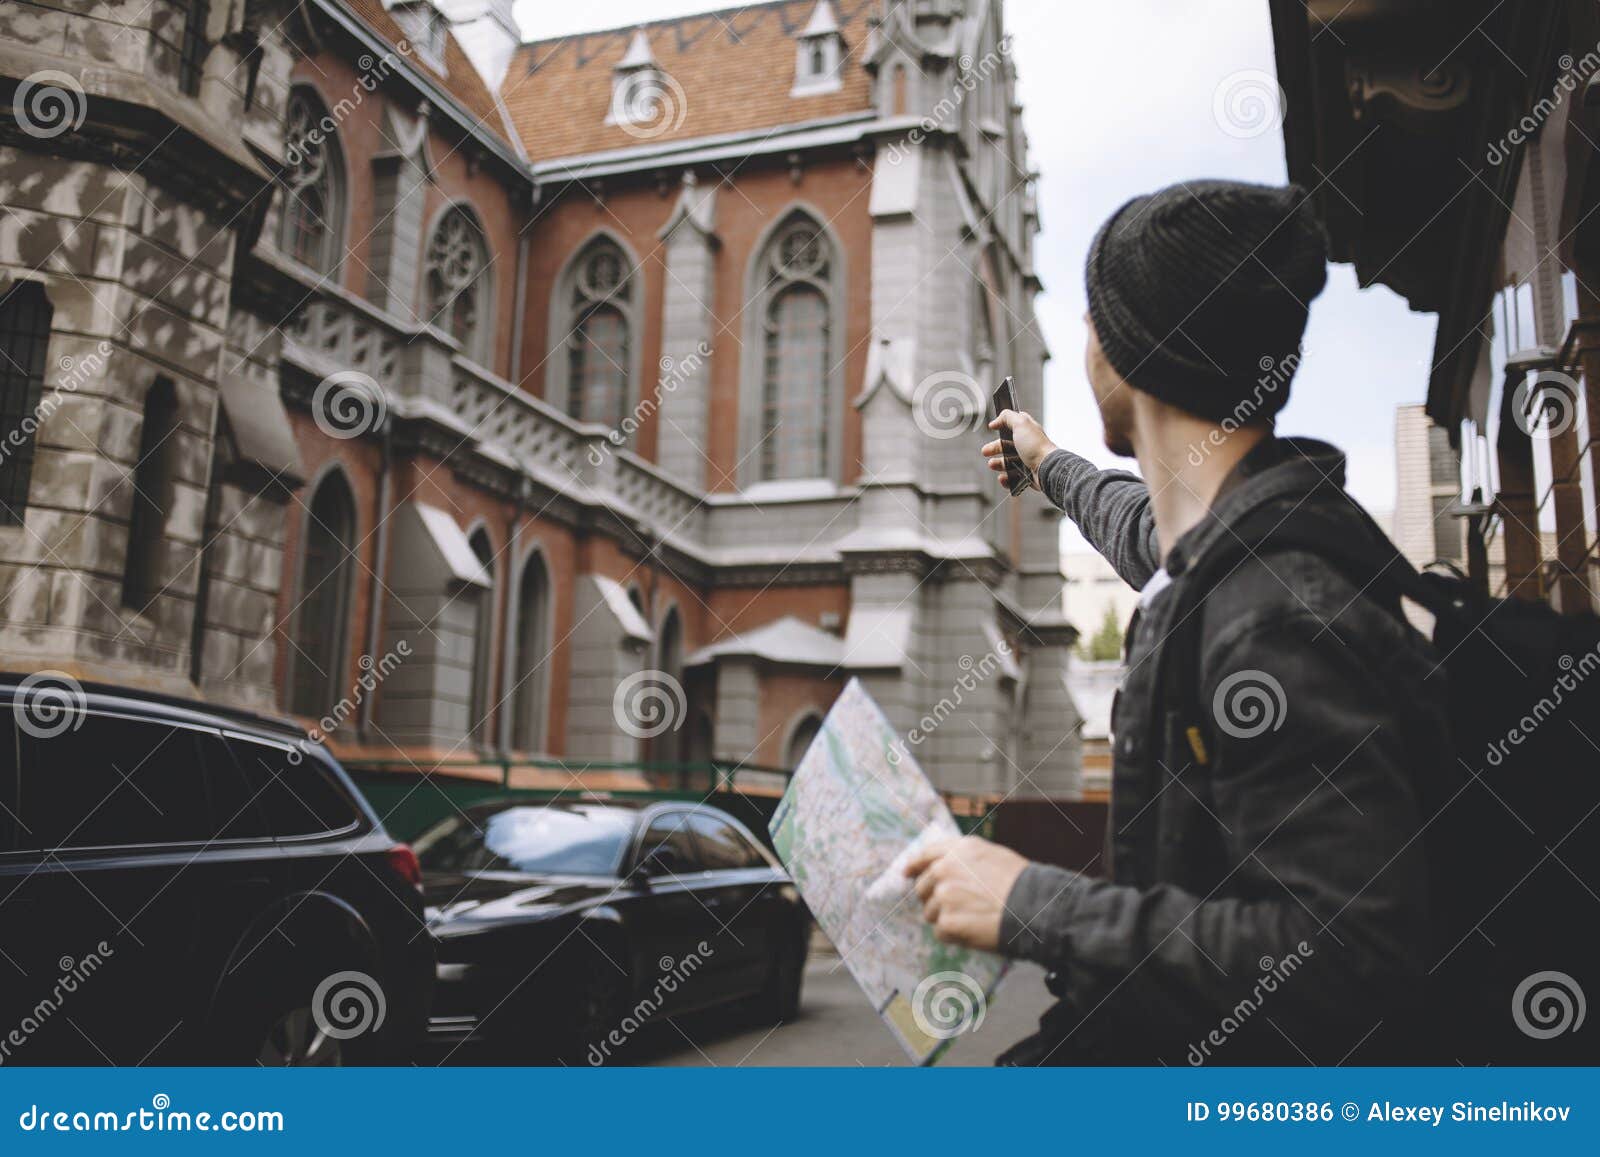 Detta som turnerar, har precis kommit till staden Han har funnit stället var han kan starta hans jorney, genom att använda telefonen och översikten Grabben pekar på kyrkan